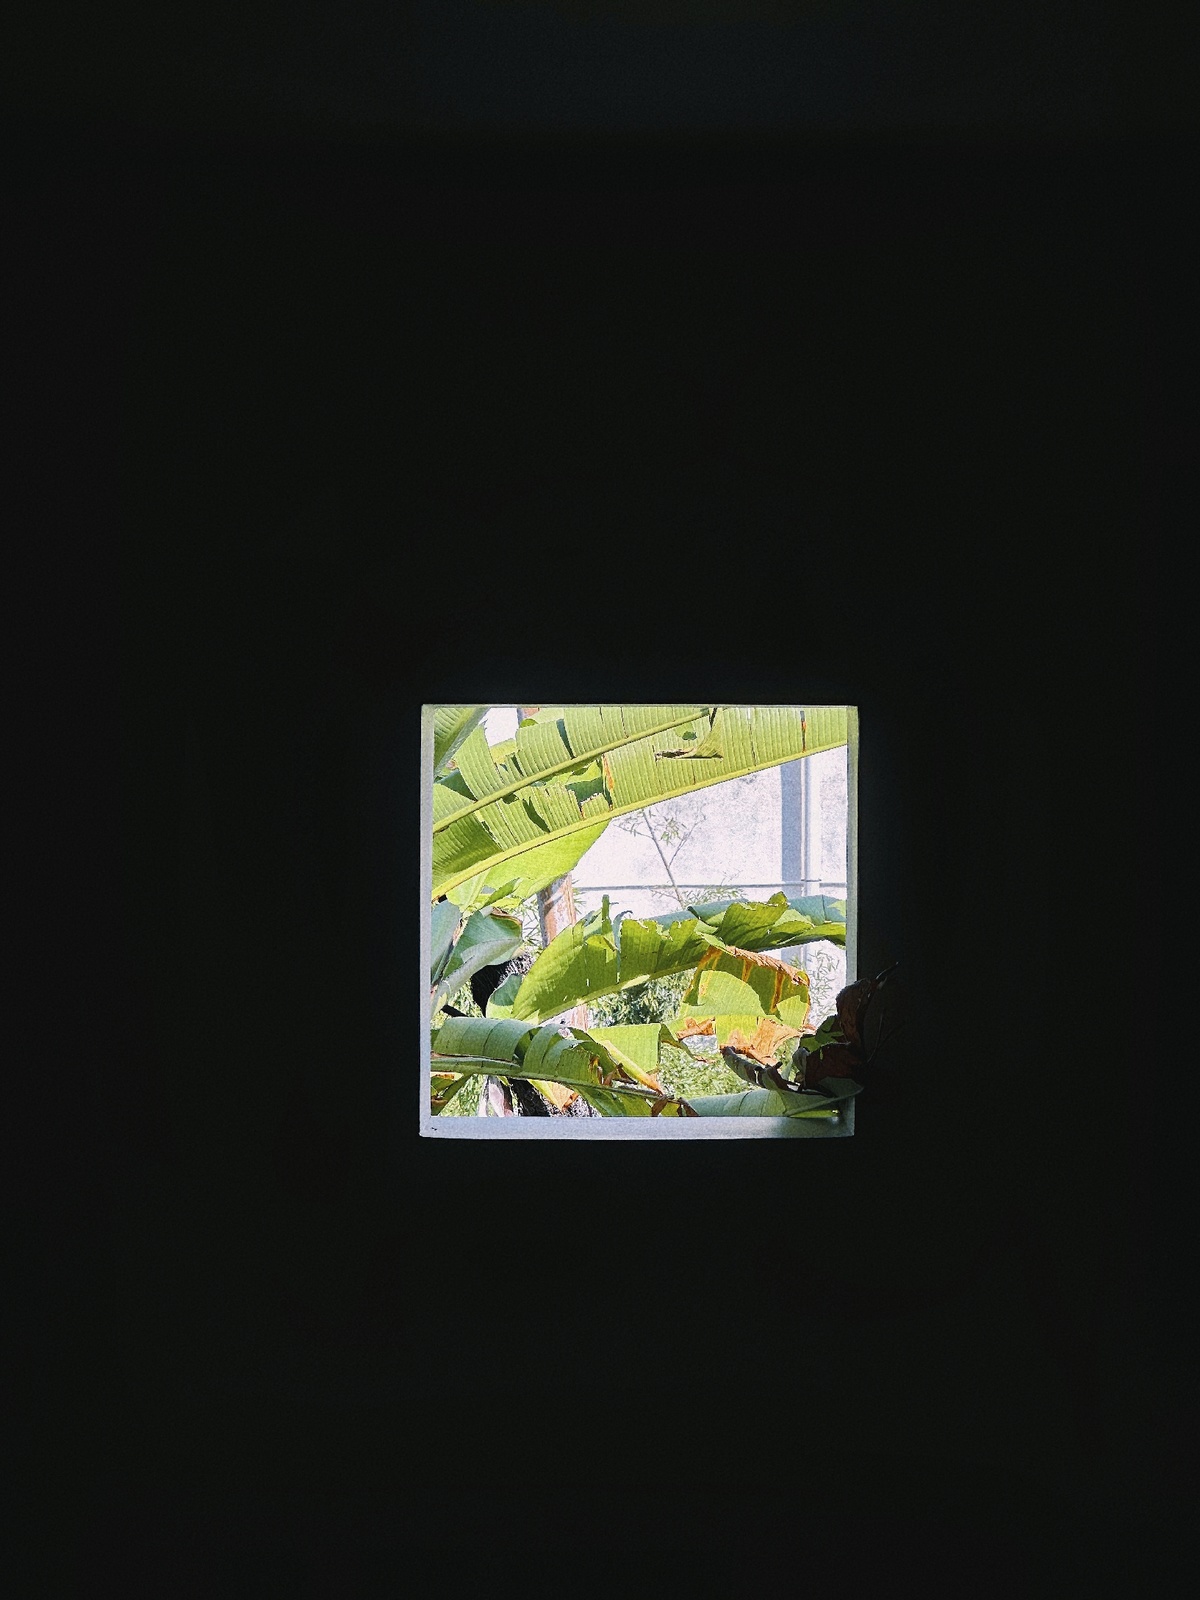 在一个黑暗的房间里有一个小窗口 里面有绿色的植物。